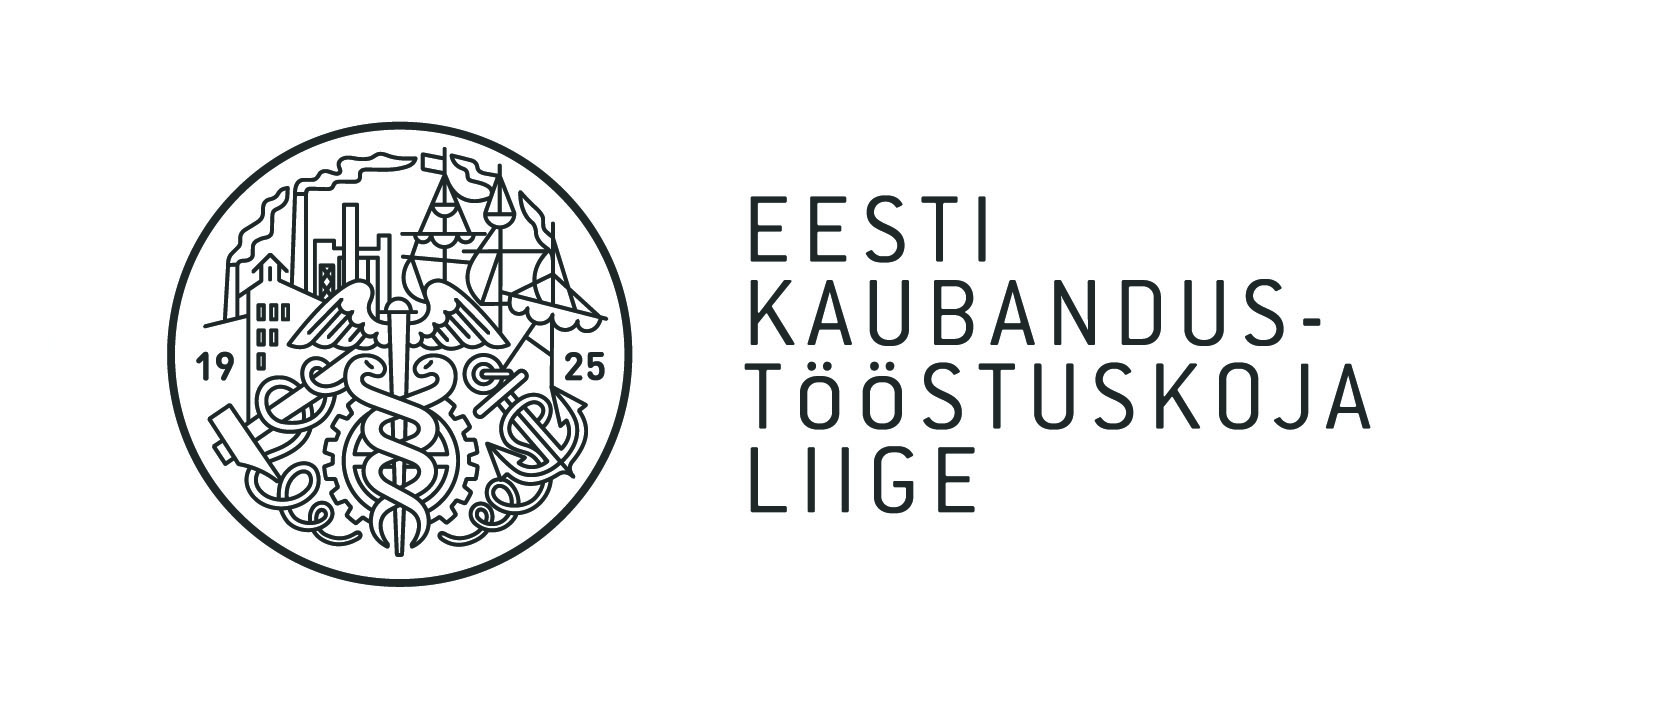 Eesti Kaubandus-Tööstuskoja logo